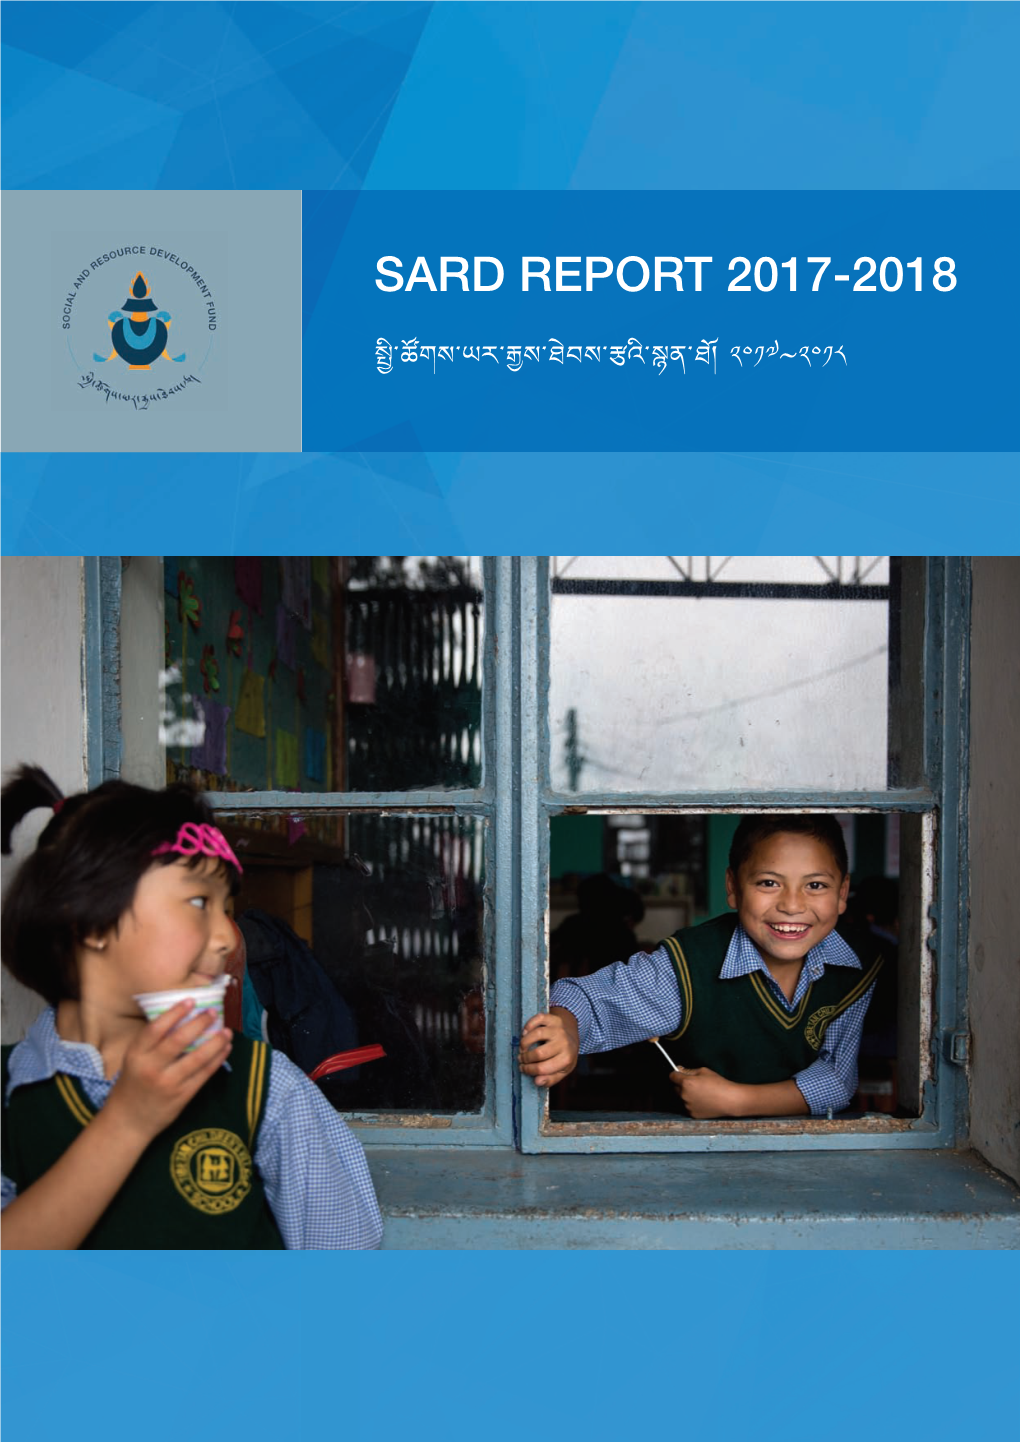 Sard Report 2017-2018